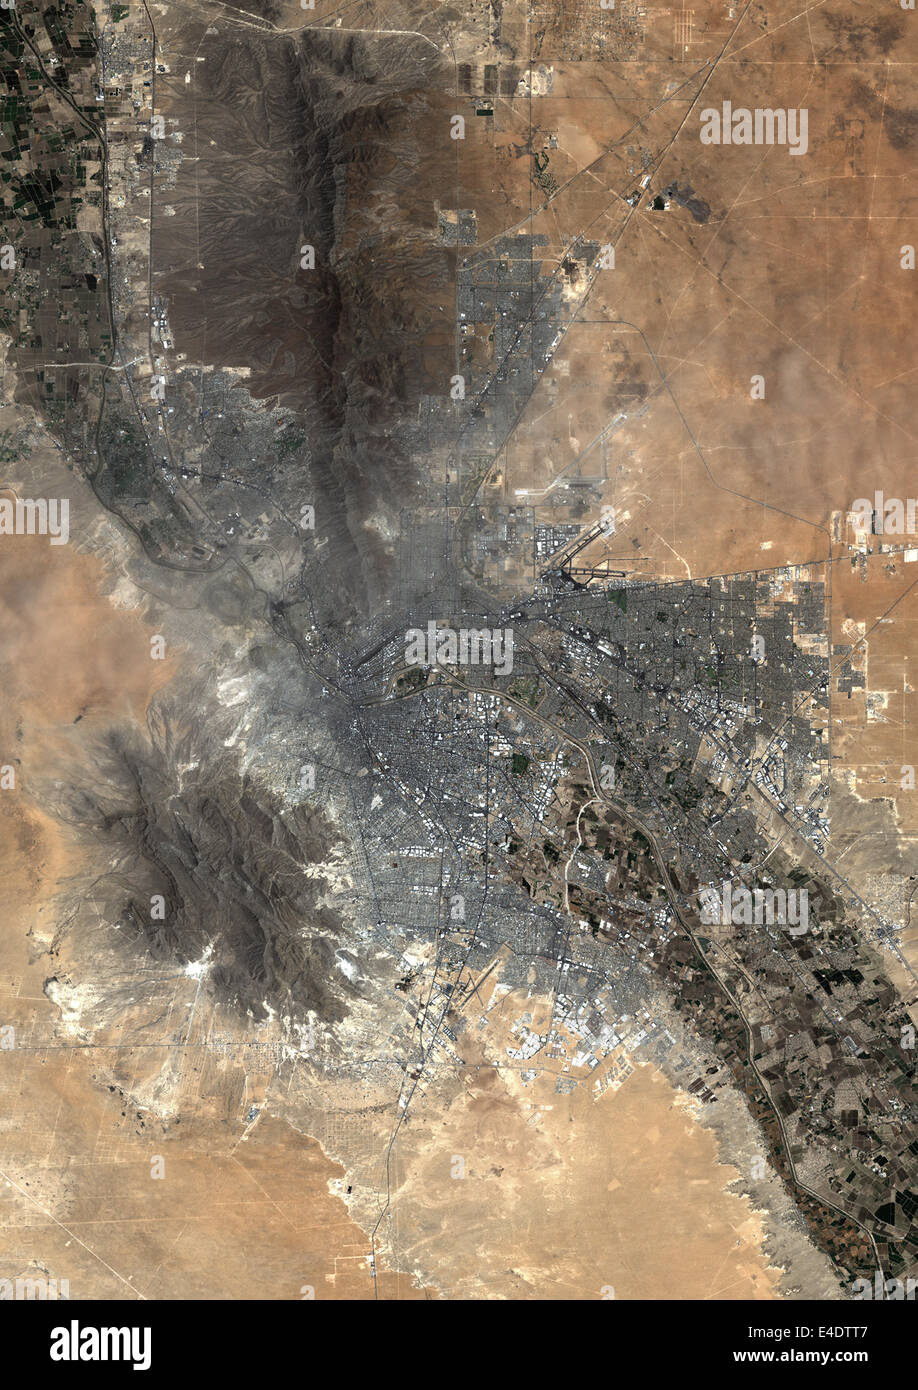 El Paso, Texas, Usa, True Colour Satellite Image. El Paso, Texas, USA. True colour satellite image of the city of El Paso, taken Stock Photo